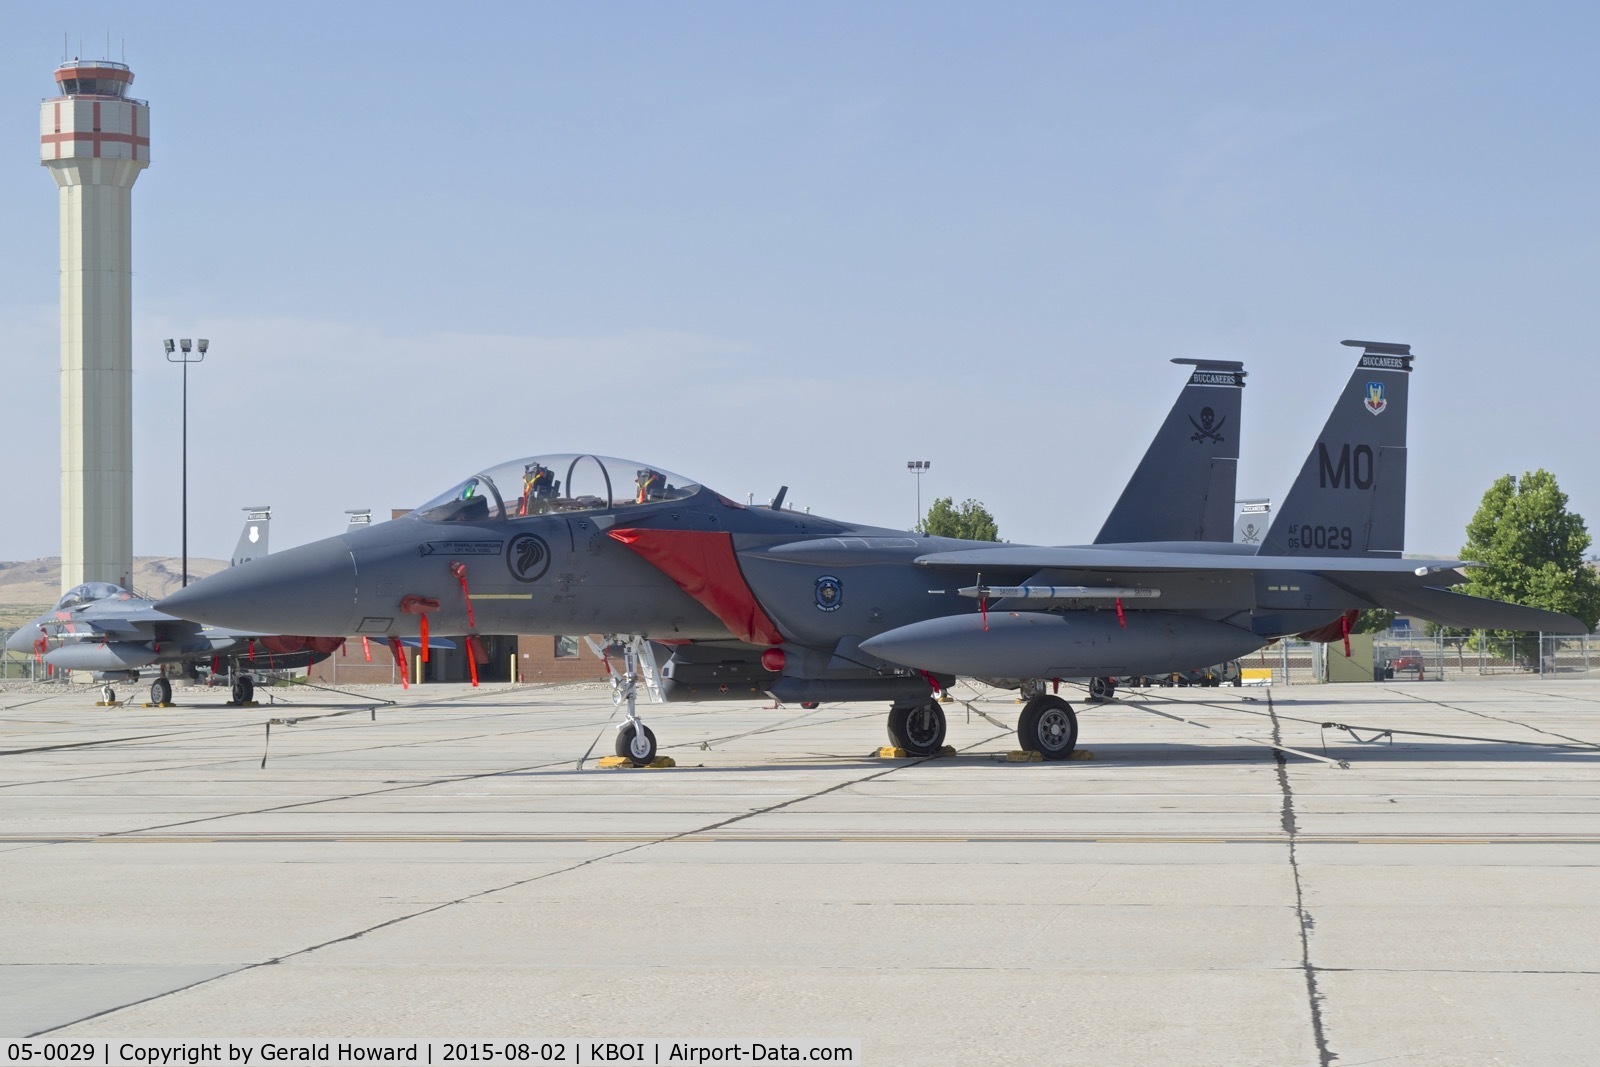 05-0029, 2005 Boeing F-15SG Strike Eagle C/N SG29, 428th Fighter Sq. 